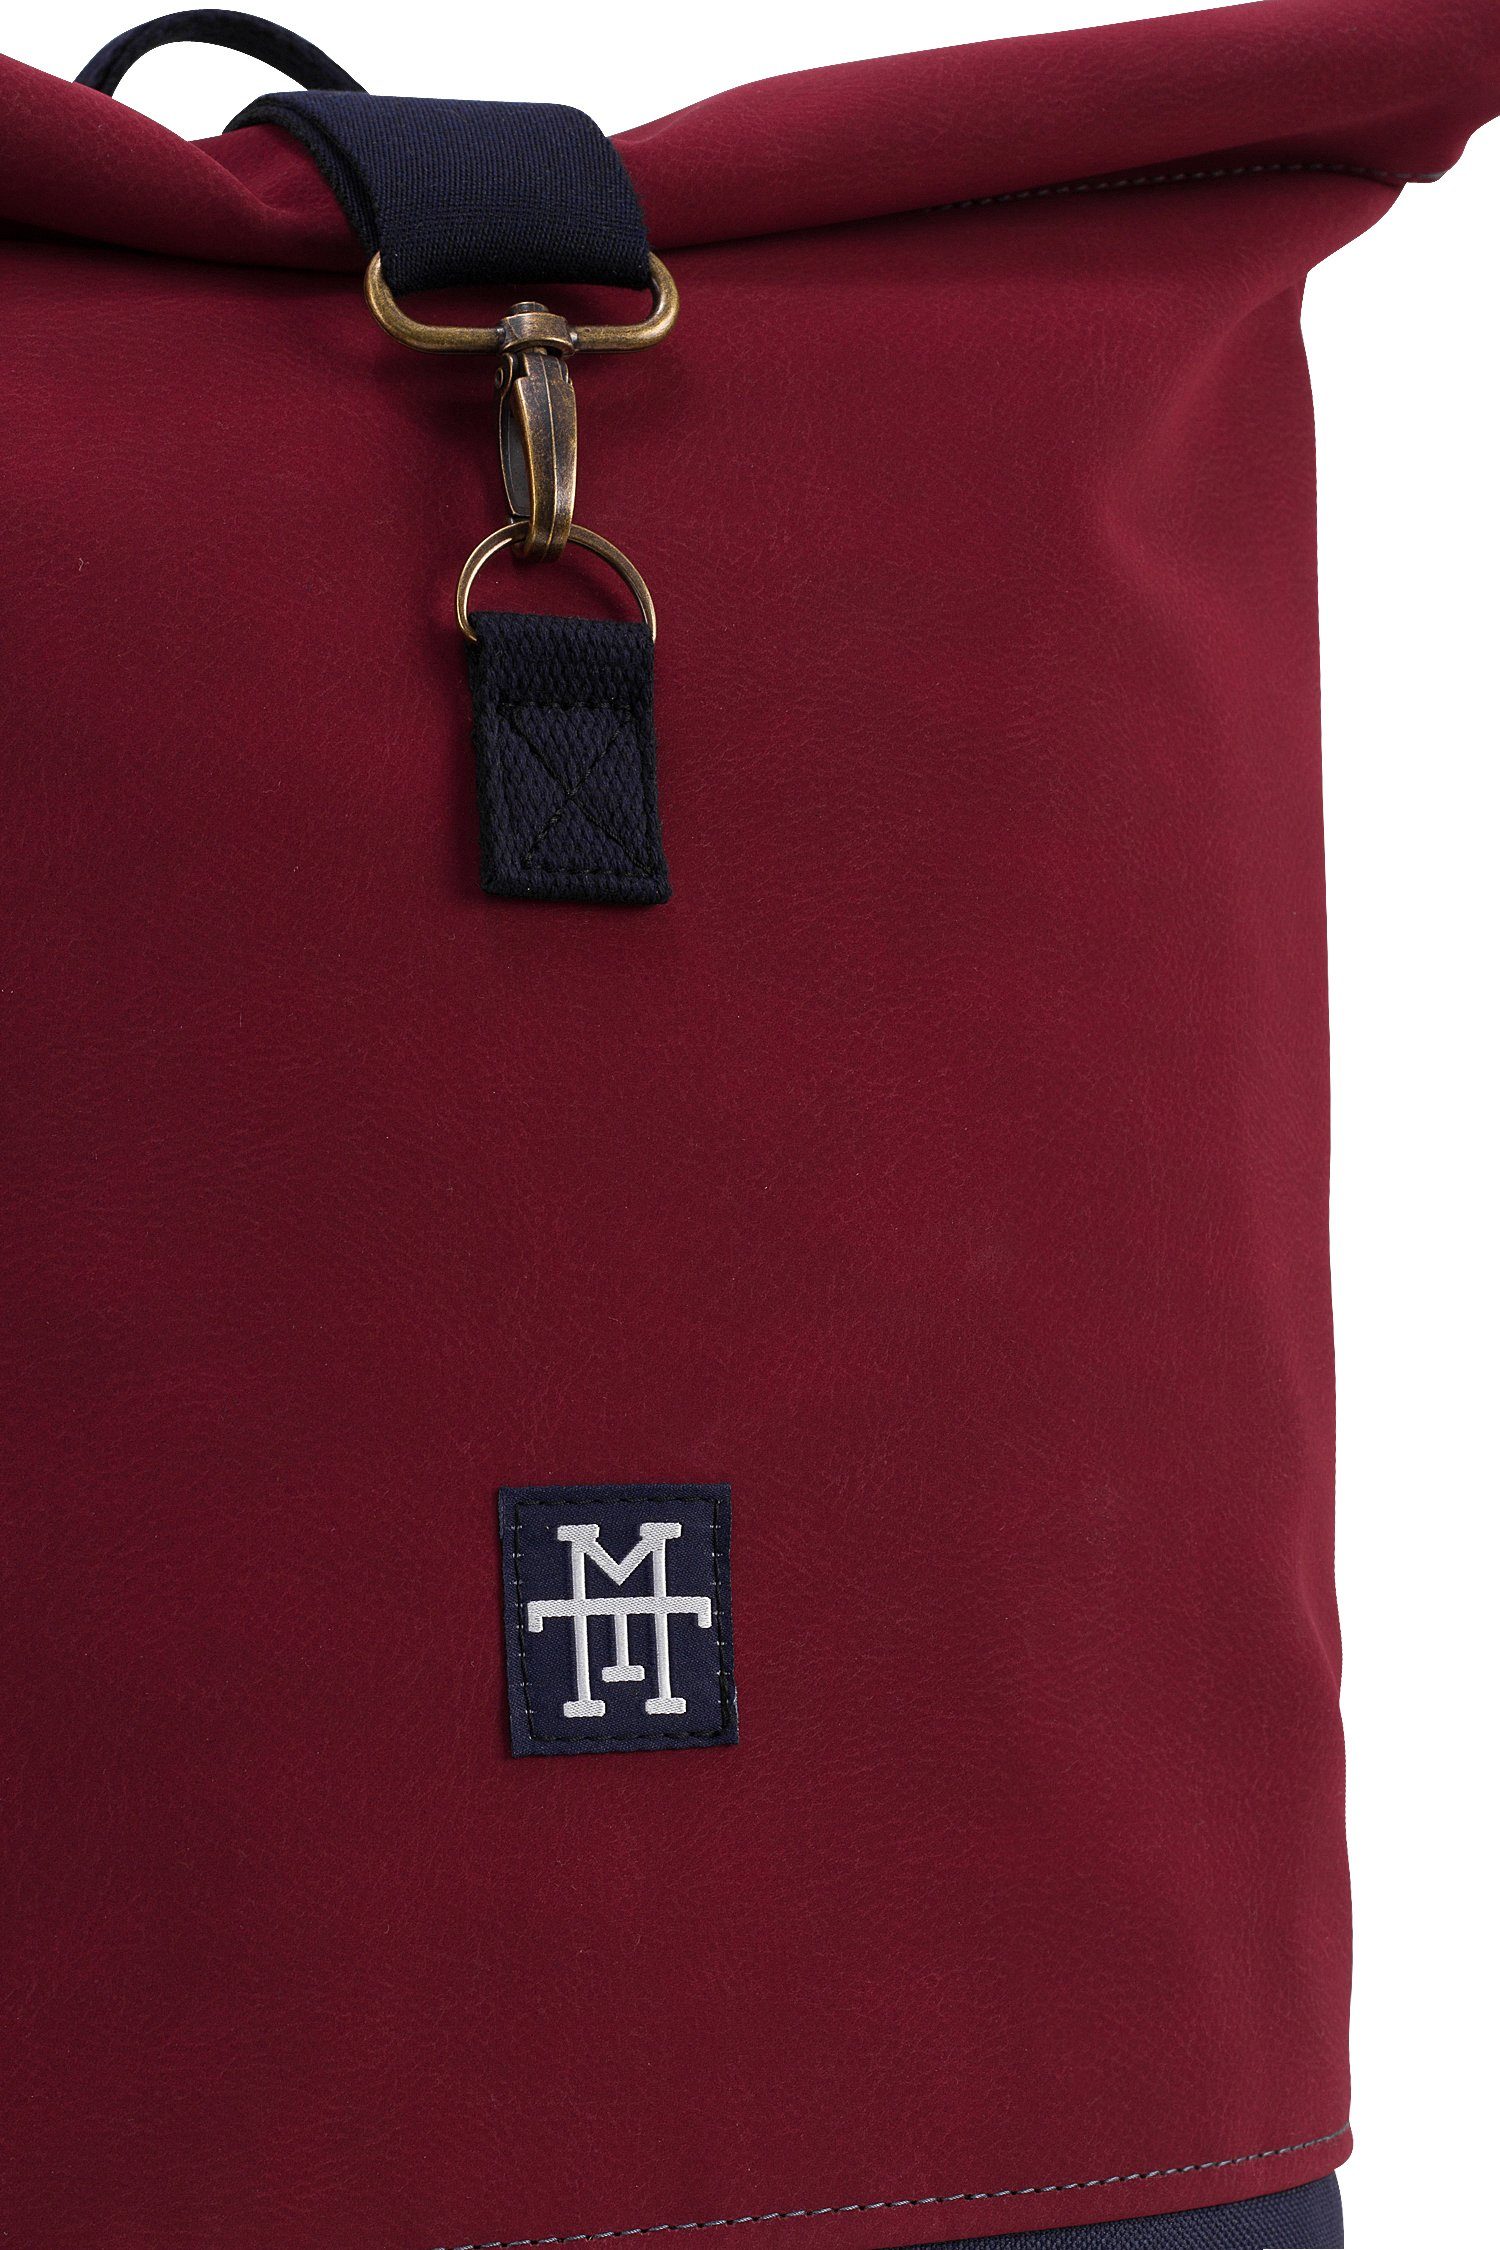 Manufaktur13 Tagesrucksack Gurte verstellbare Roll-Top Bordeaux mit wasserdicht/wasserabweisend, Mini Rollverschluss, Rucksack - Backpack